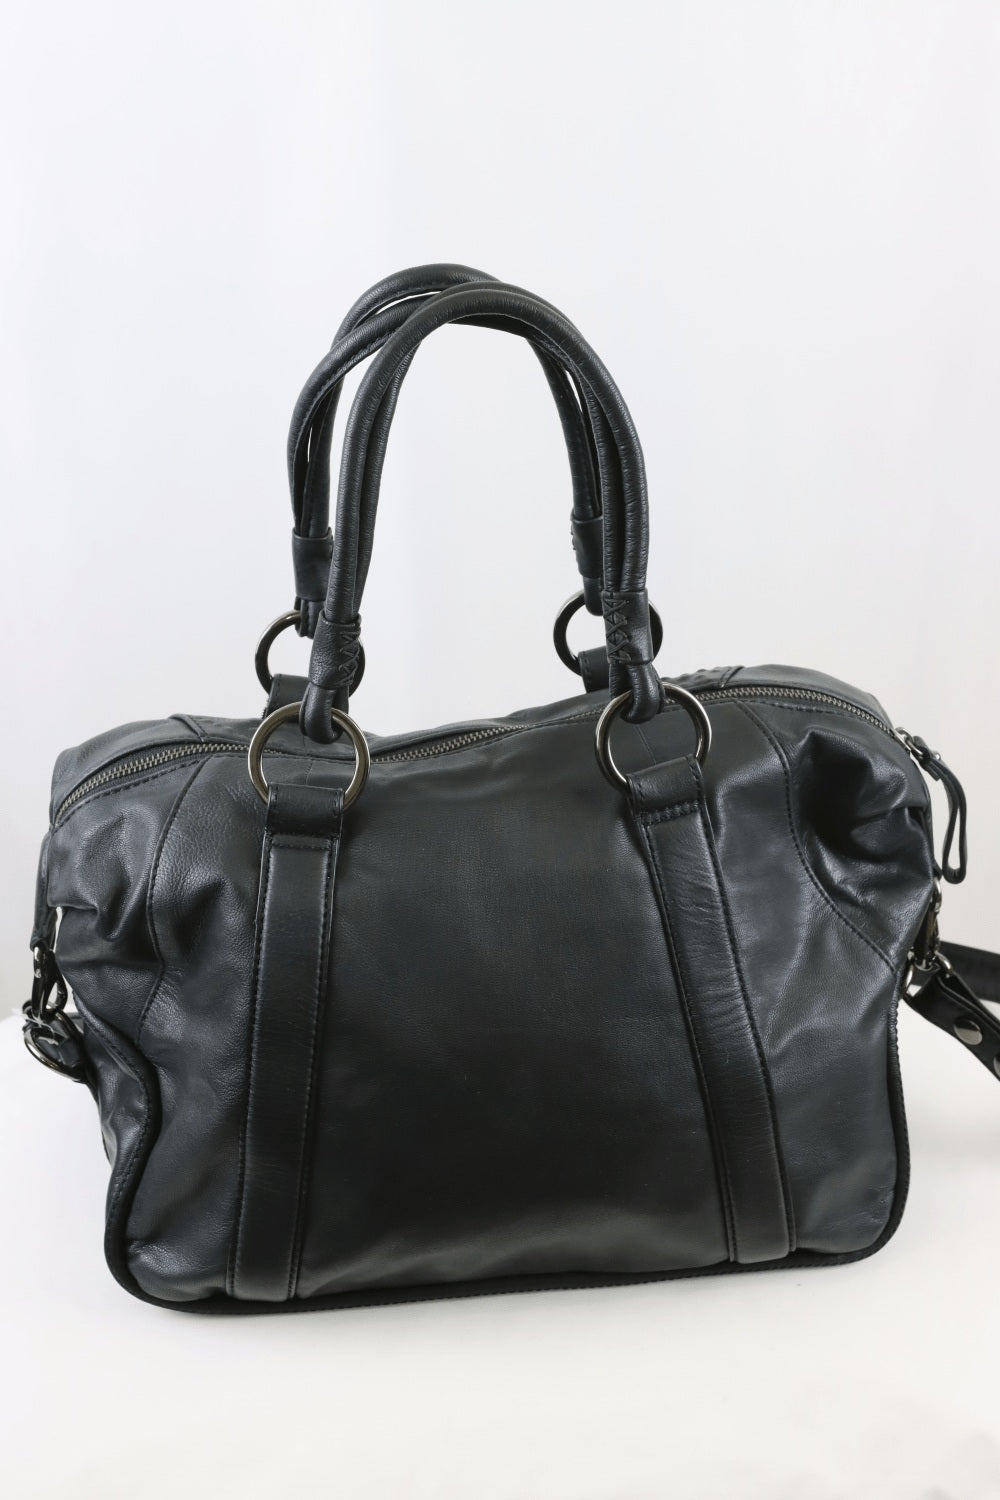 Mimco Large Shoulder Bag Black